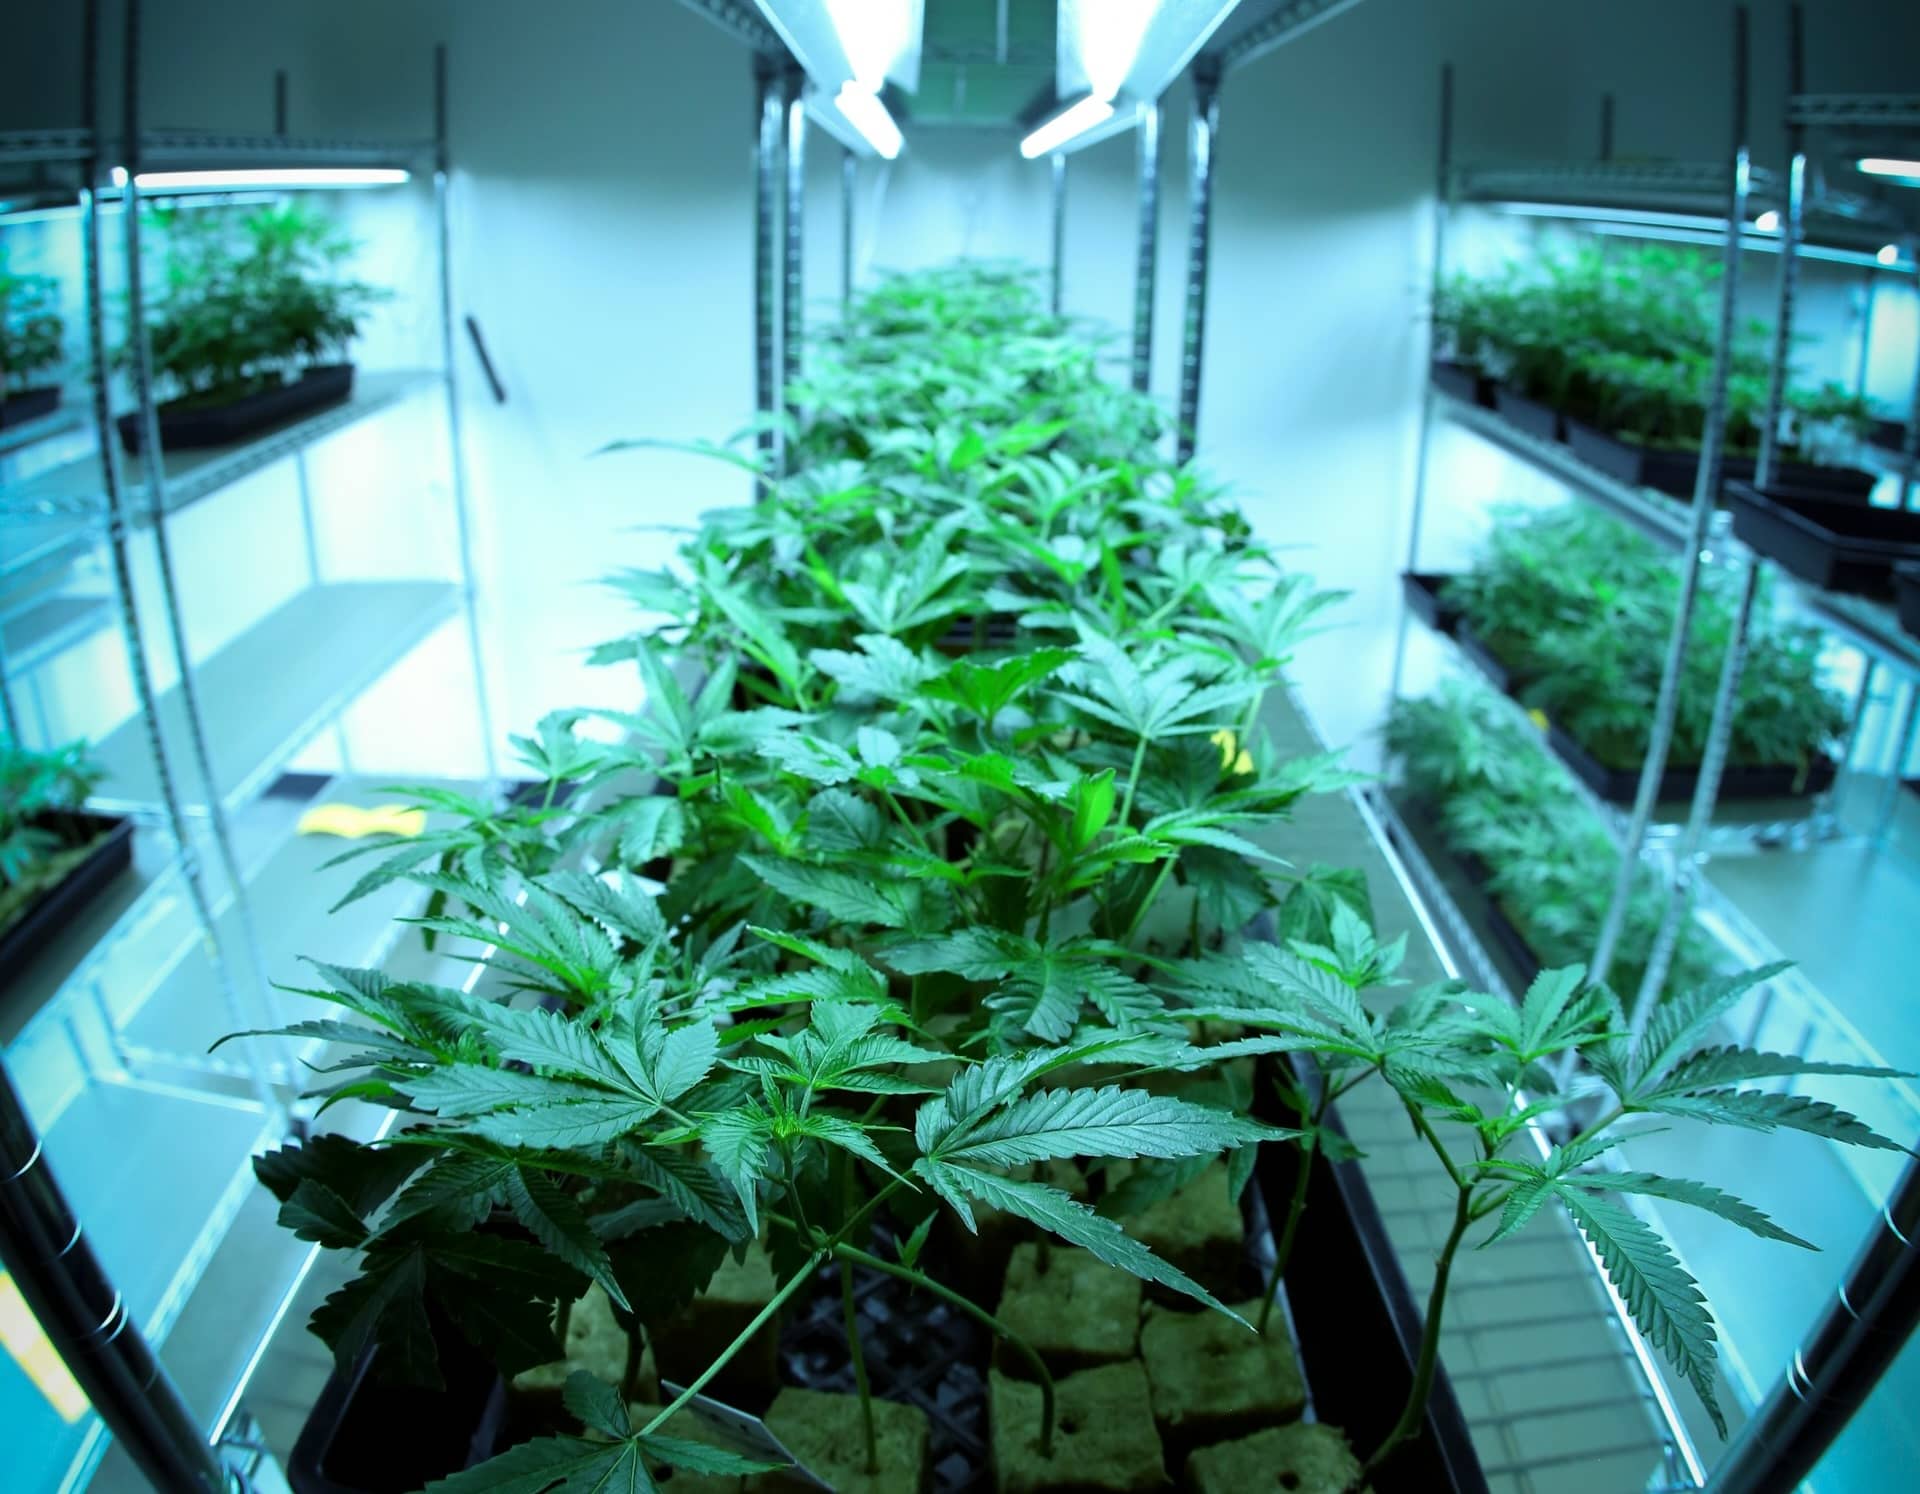 Kentucky Cultivator License: Starting a Cannabis Grow